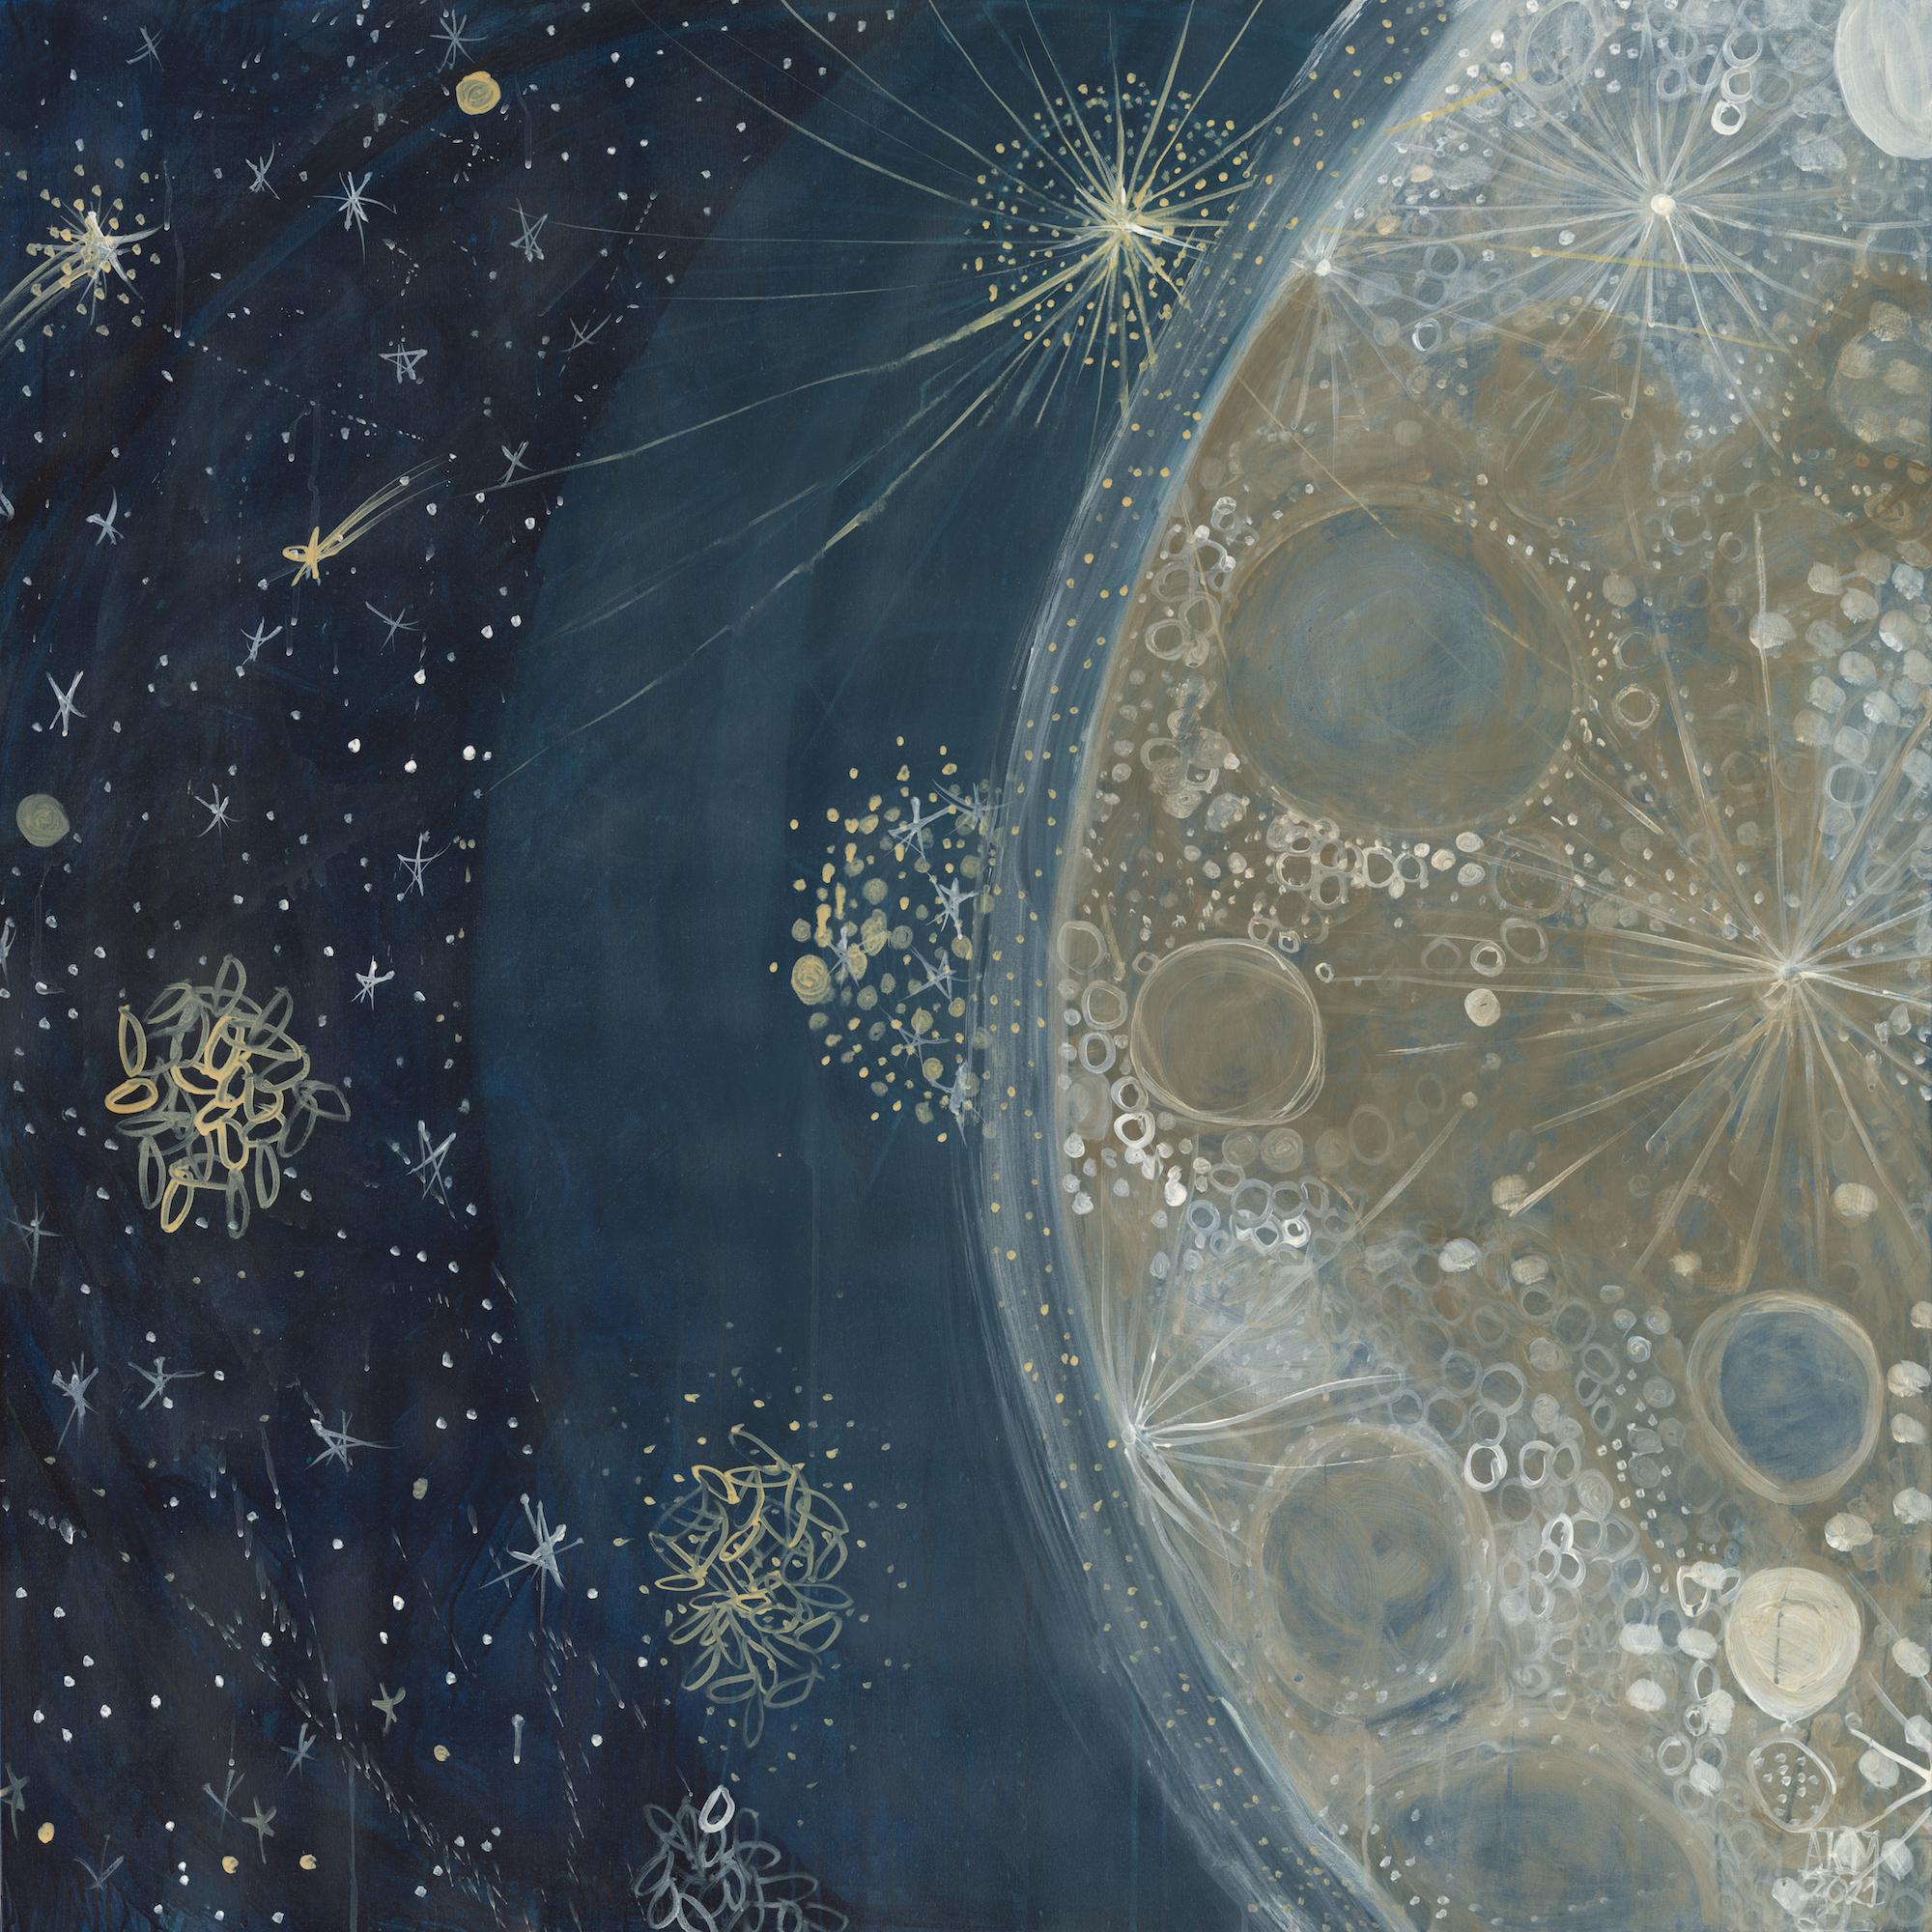 Alex K. Mason Landscape Painting – Abstraktes Celestial-Gemälde in Mischtechnik auf Leinwand Blau, Gold, Weiß